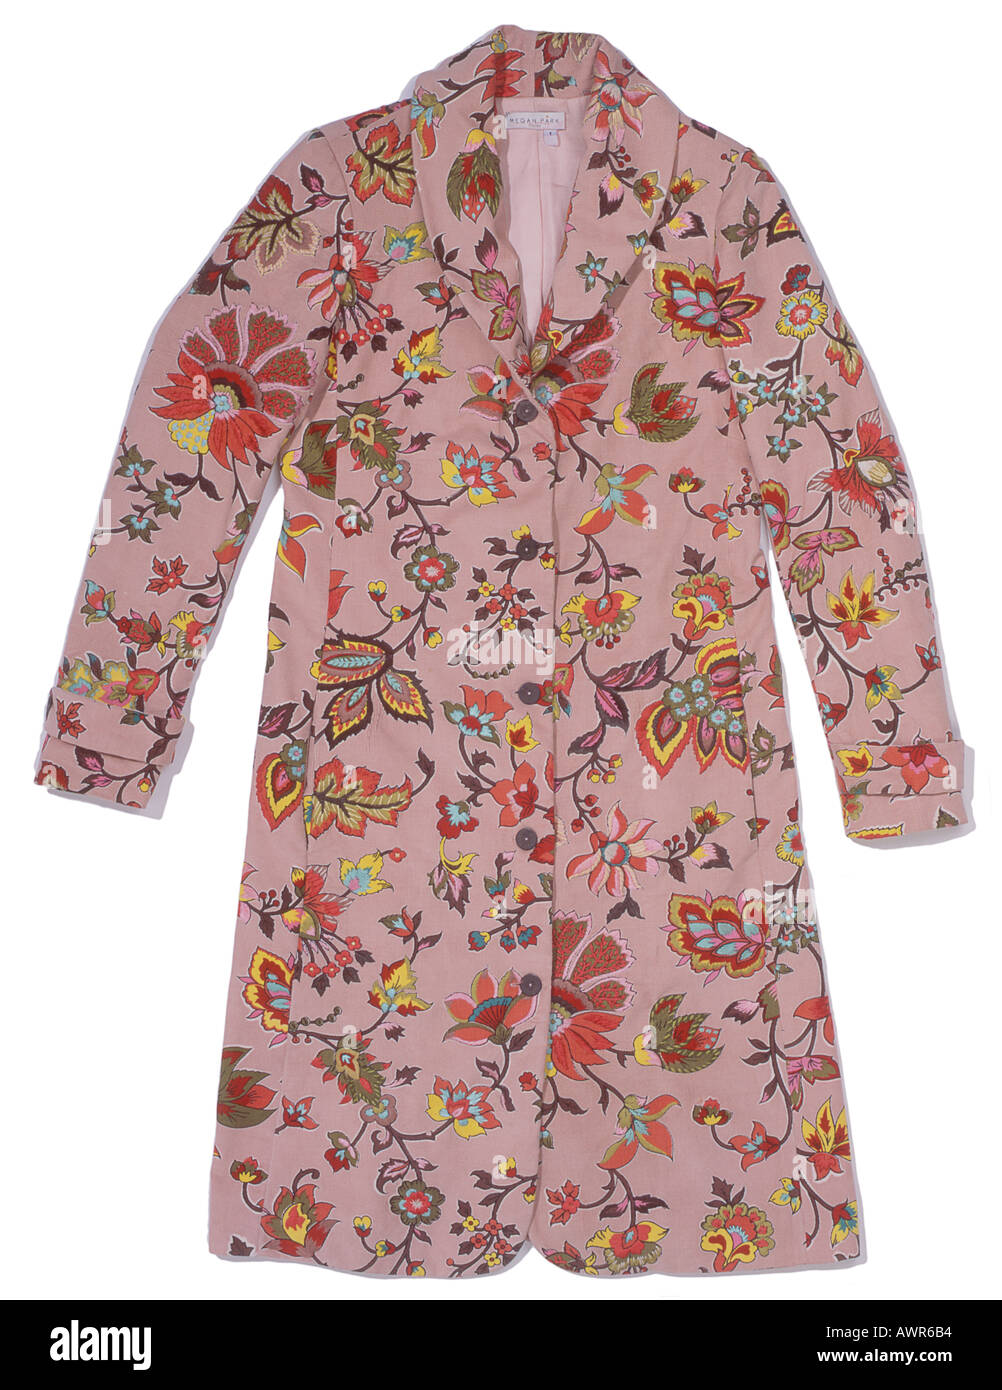 Damen Mantel mit Blumen-Designs von Megan Park Stockfoto